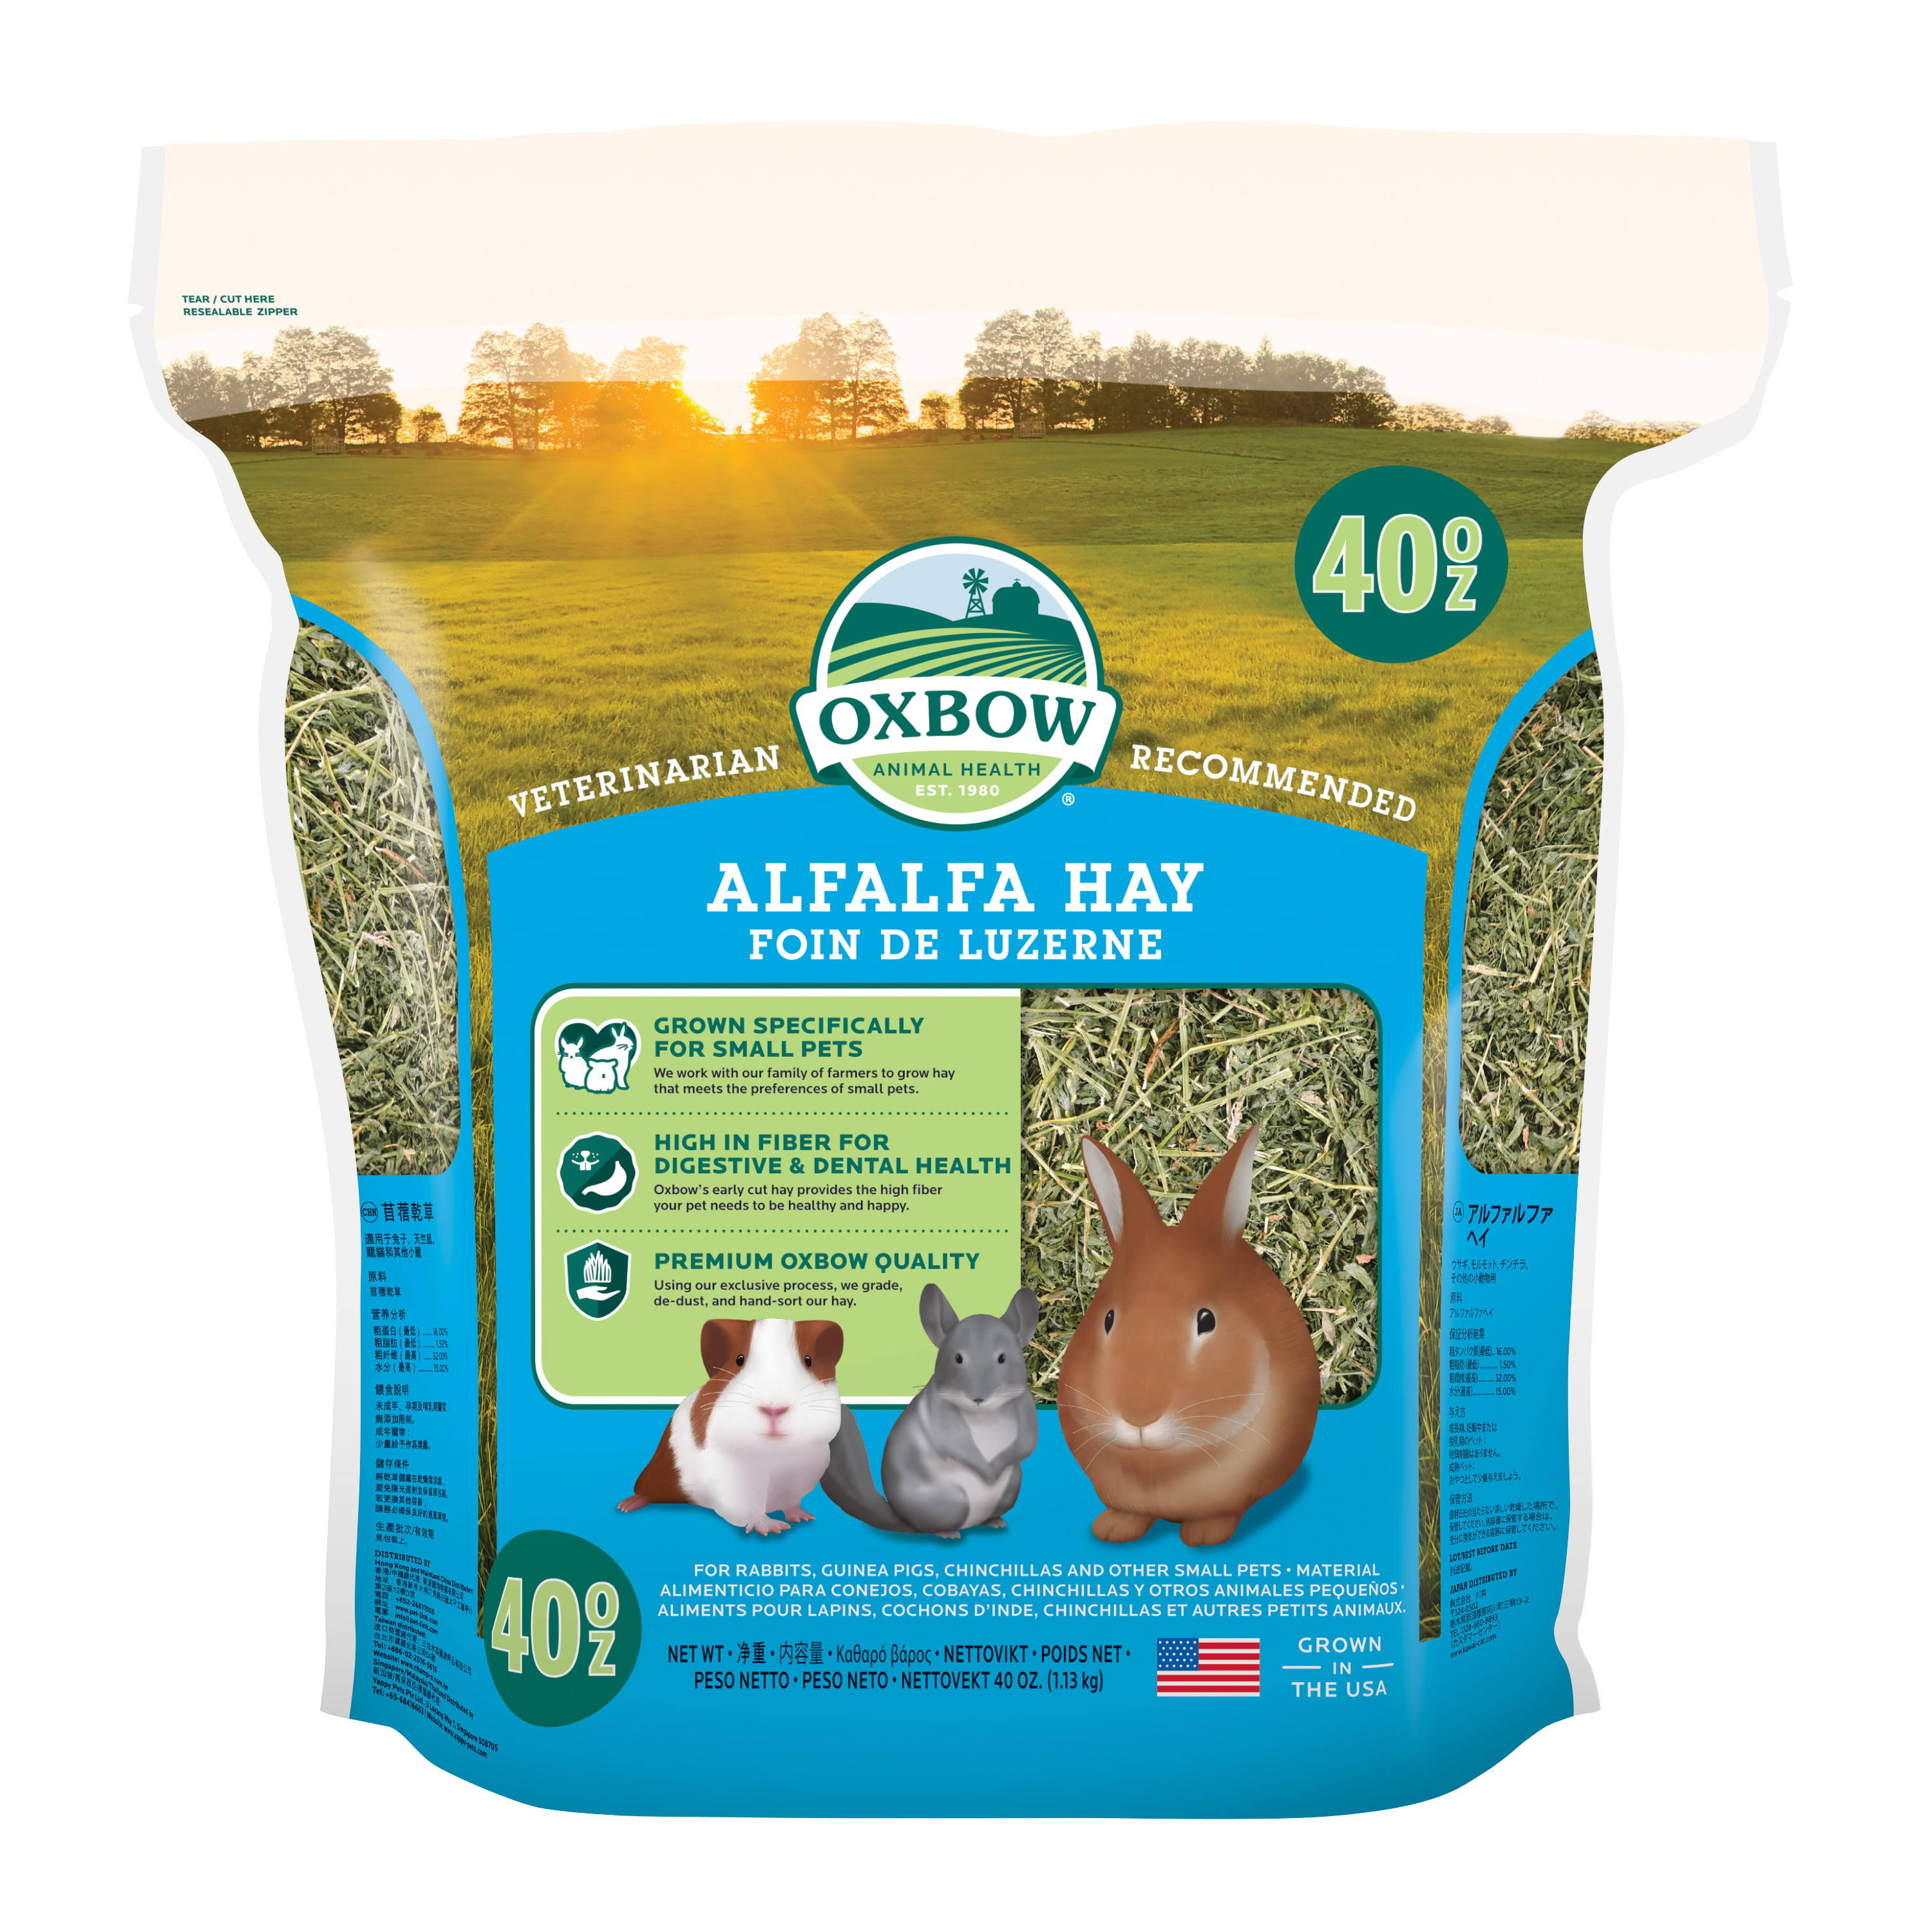 OXBOW Alfalfa Hay 40 oz